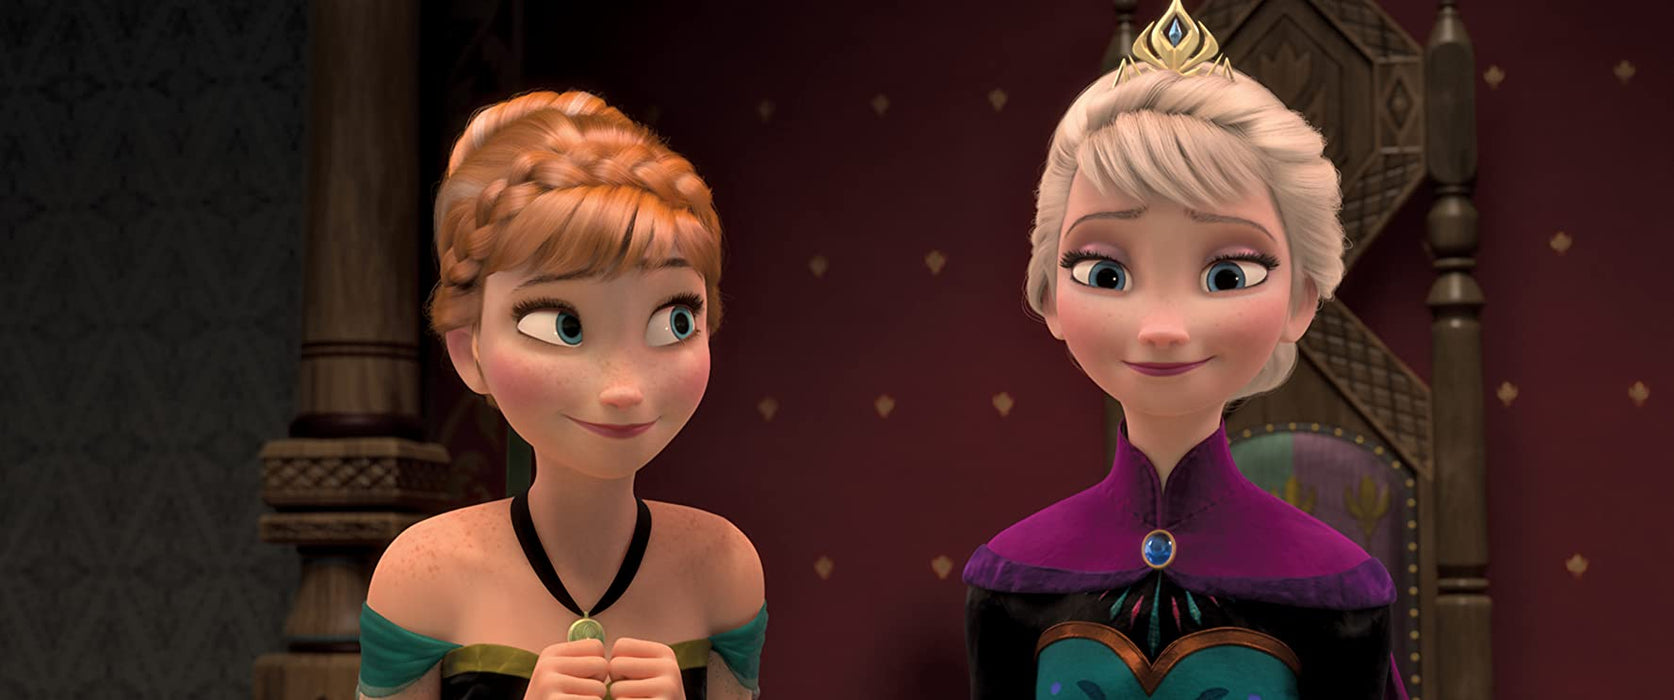 Disney's Frozen [DVD]